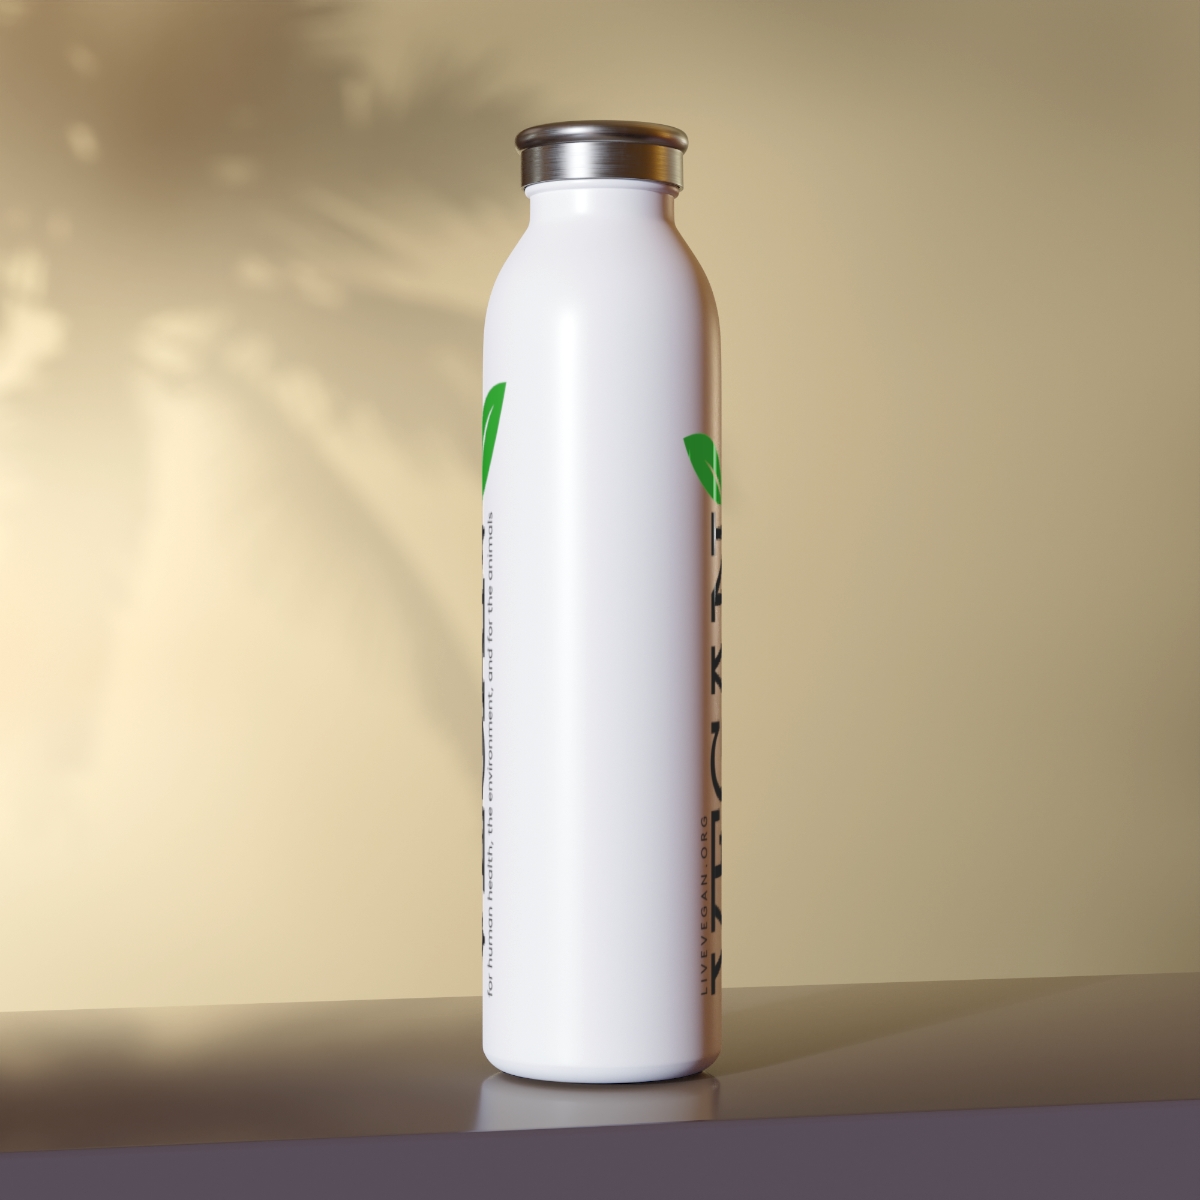 VEGAN Slim Water Bottle product thumbnail image